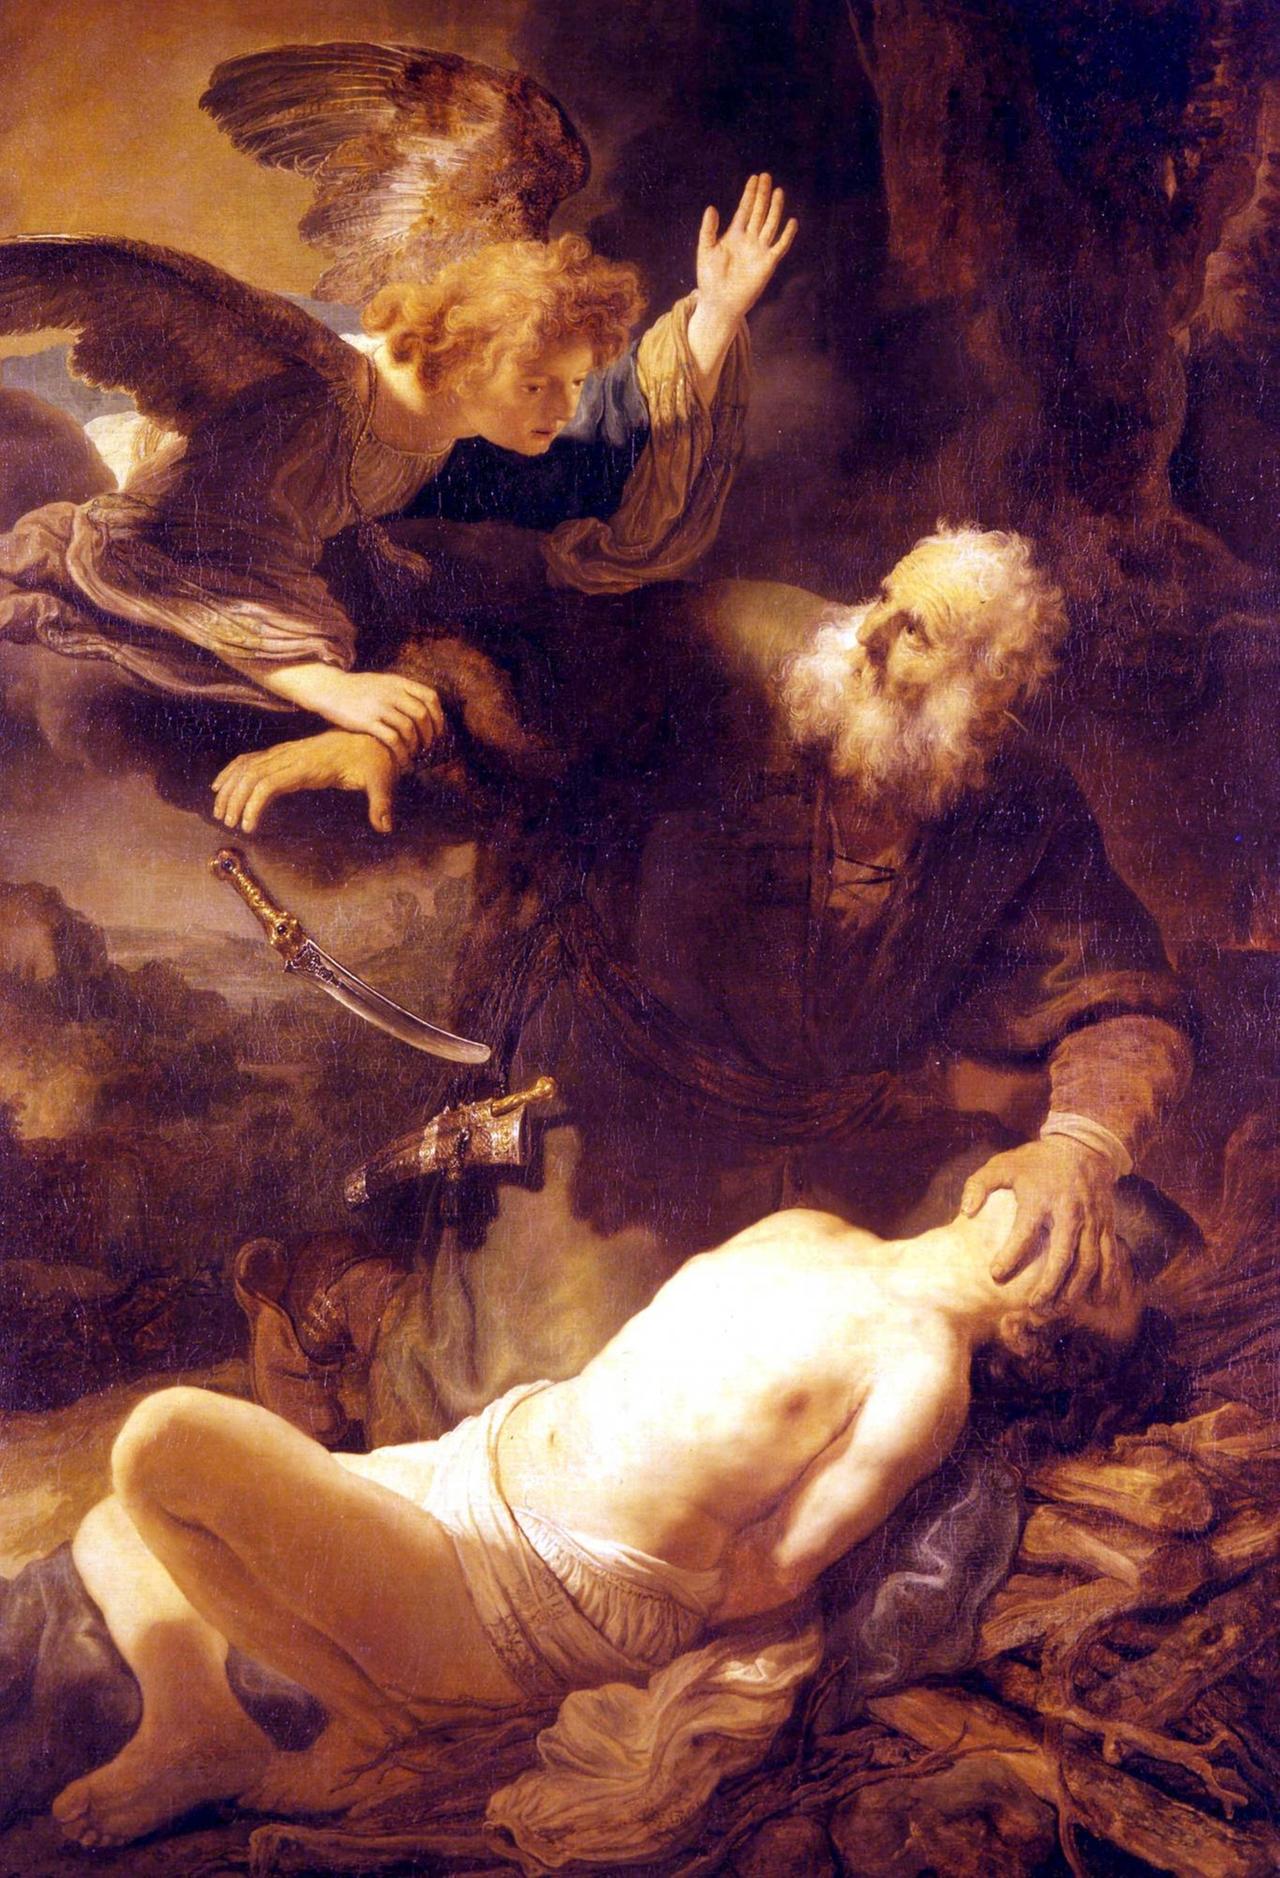 Das Gemälde "Die Opferung Isaaks" ist eines der frühen Werke Rembrandts und zeigt den Engel, der Abraham davon abhält, seinen Sohn Isaak zu schlachten